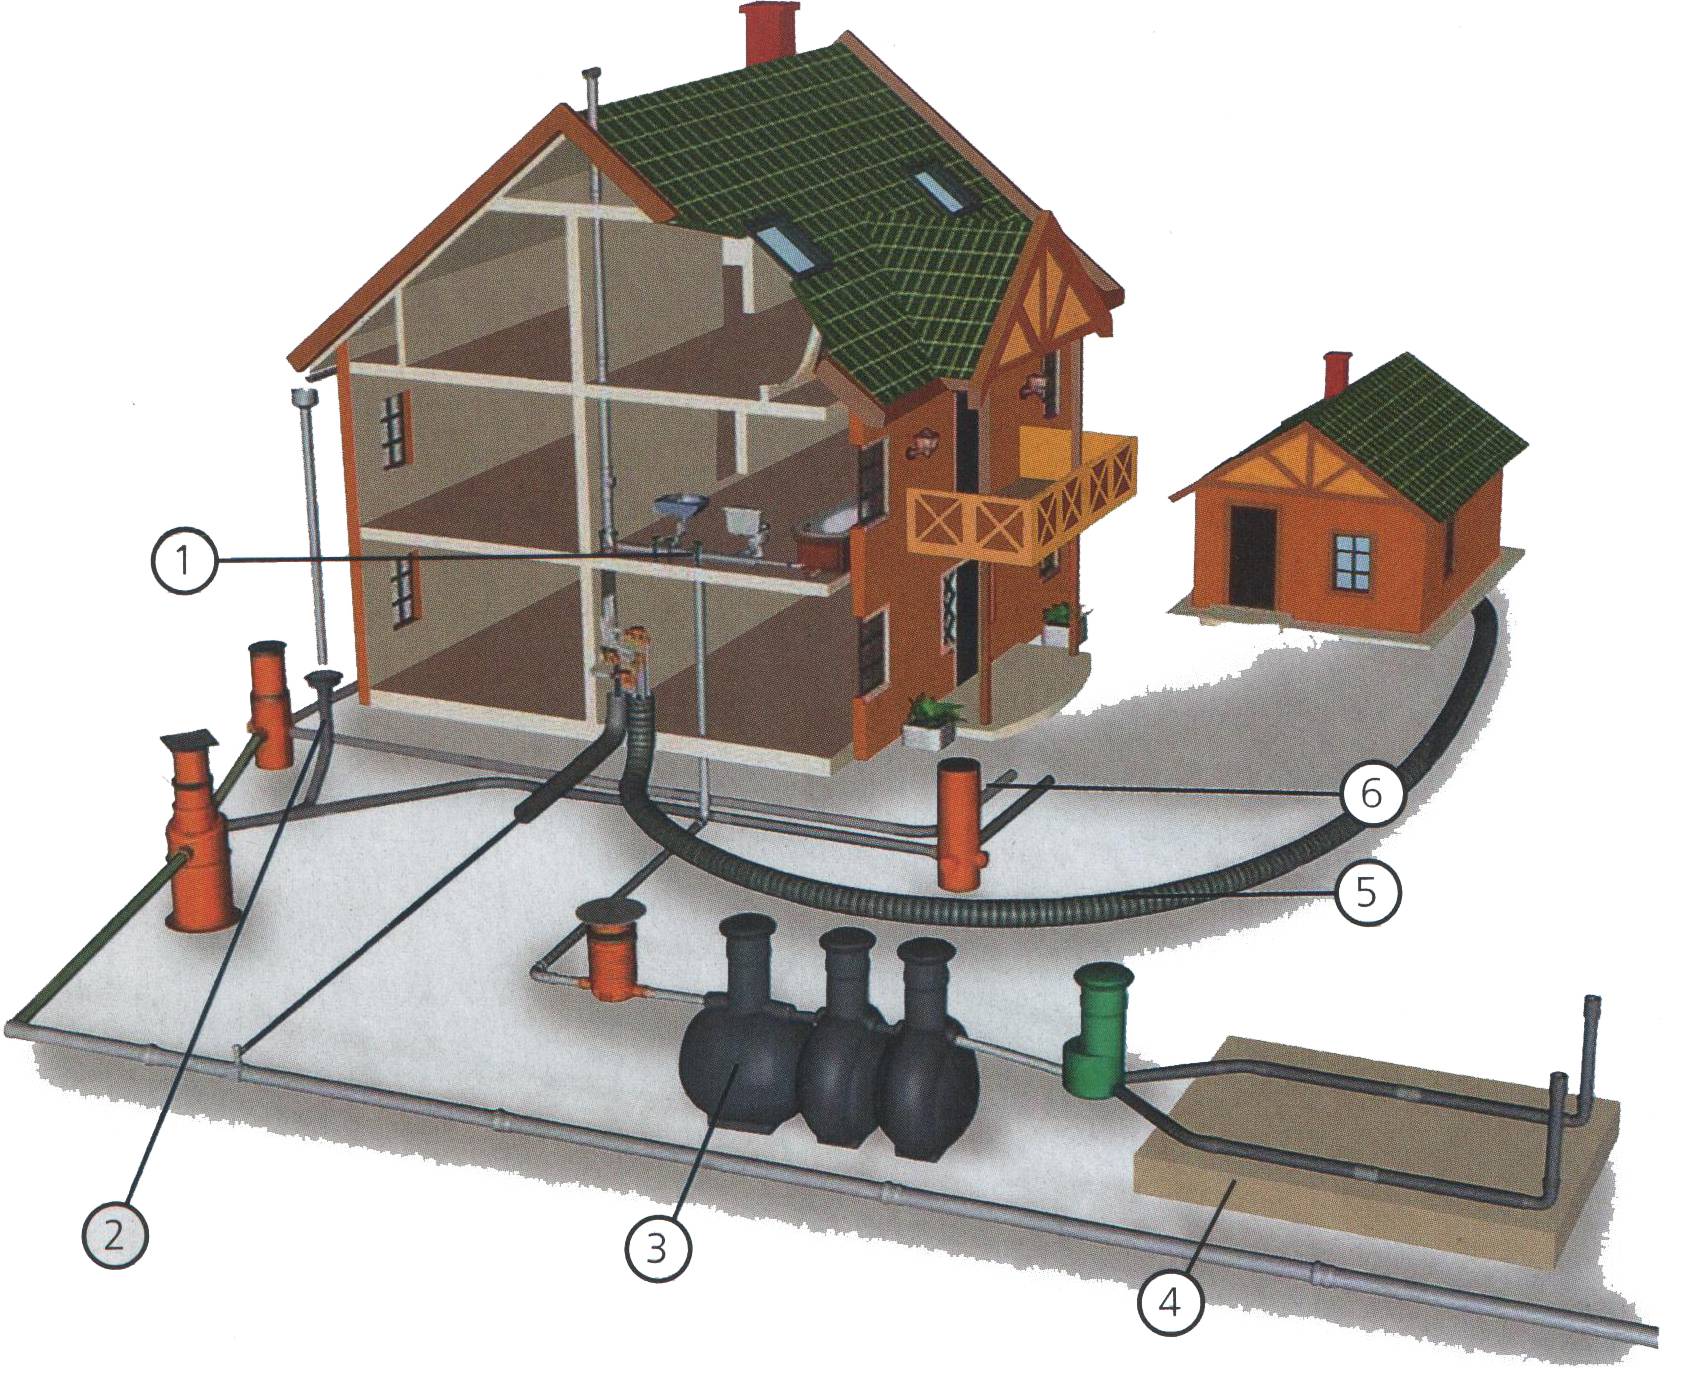 Ливневки дома. Система отведения ливневых вод. Ливневая система канализации. Наружная система ливневой канализации. Инженерная система ливневой канализации.